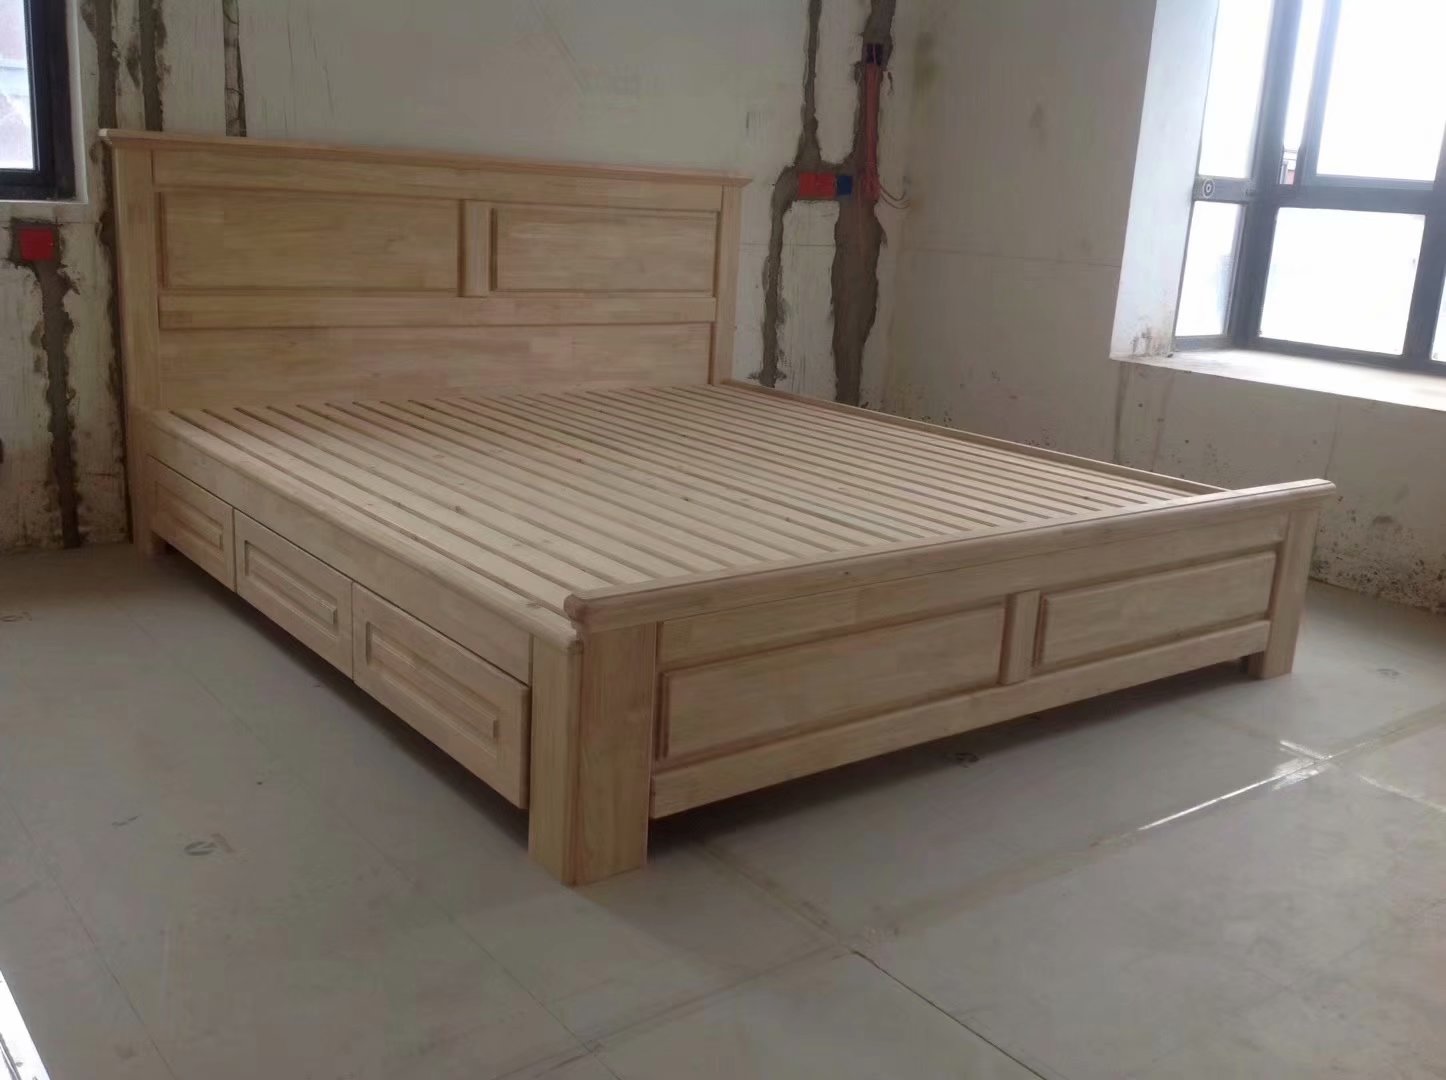 南京装修工地,木工师傅现场做的床,还没来得及上油漆!